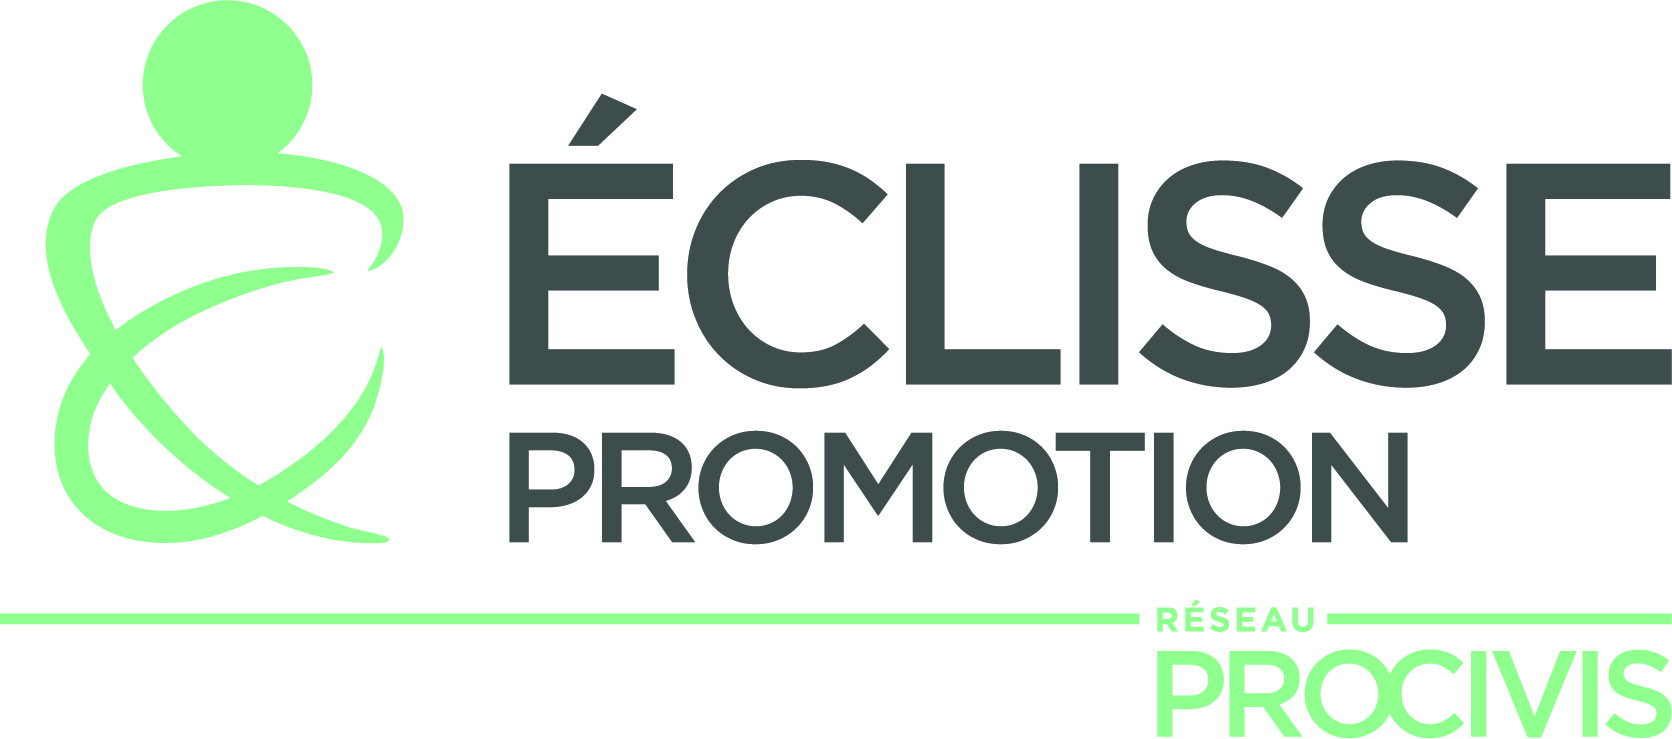 Eclisse Promotion-Groupe Procivis